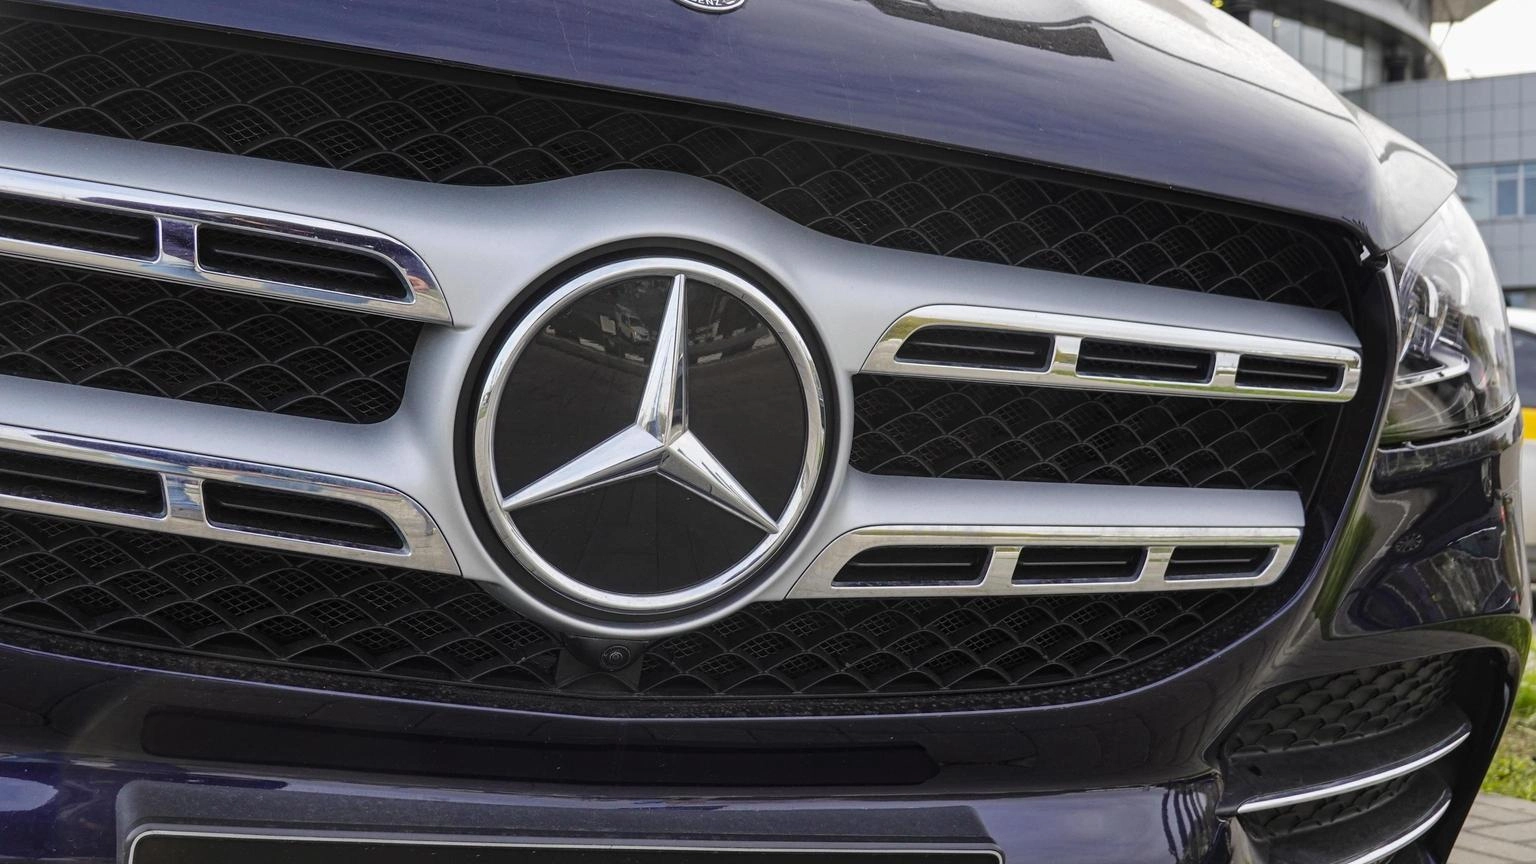 Mercedes chiude trimestre con un utile in calo a 3 miliardi